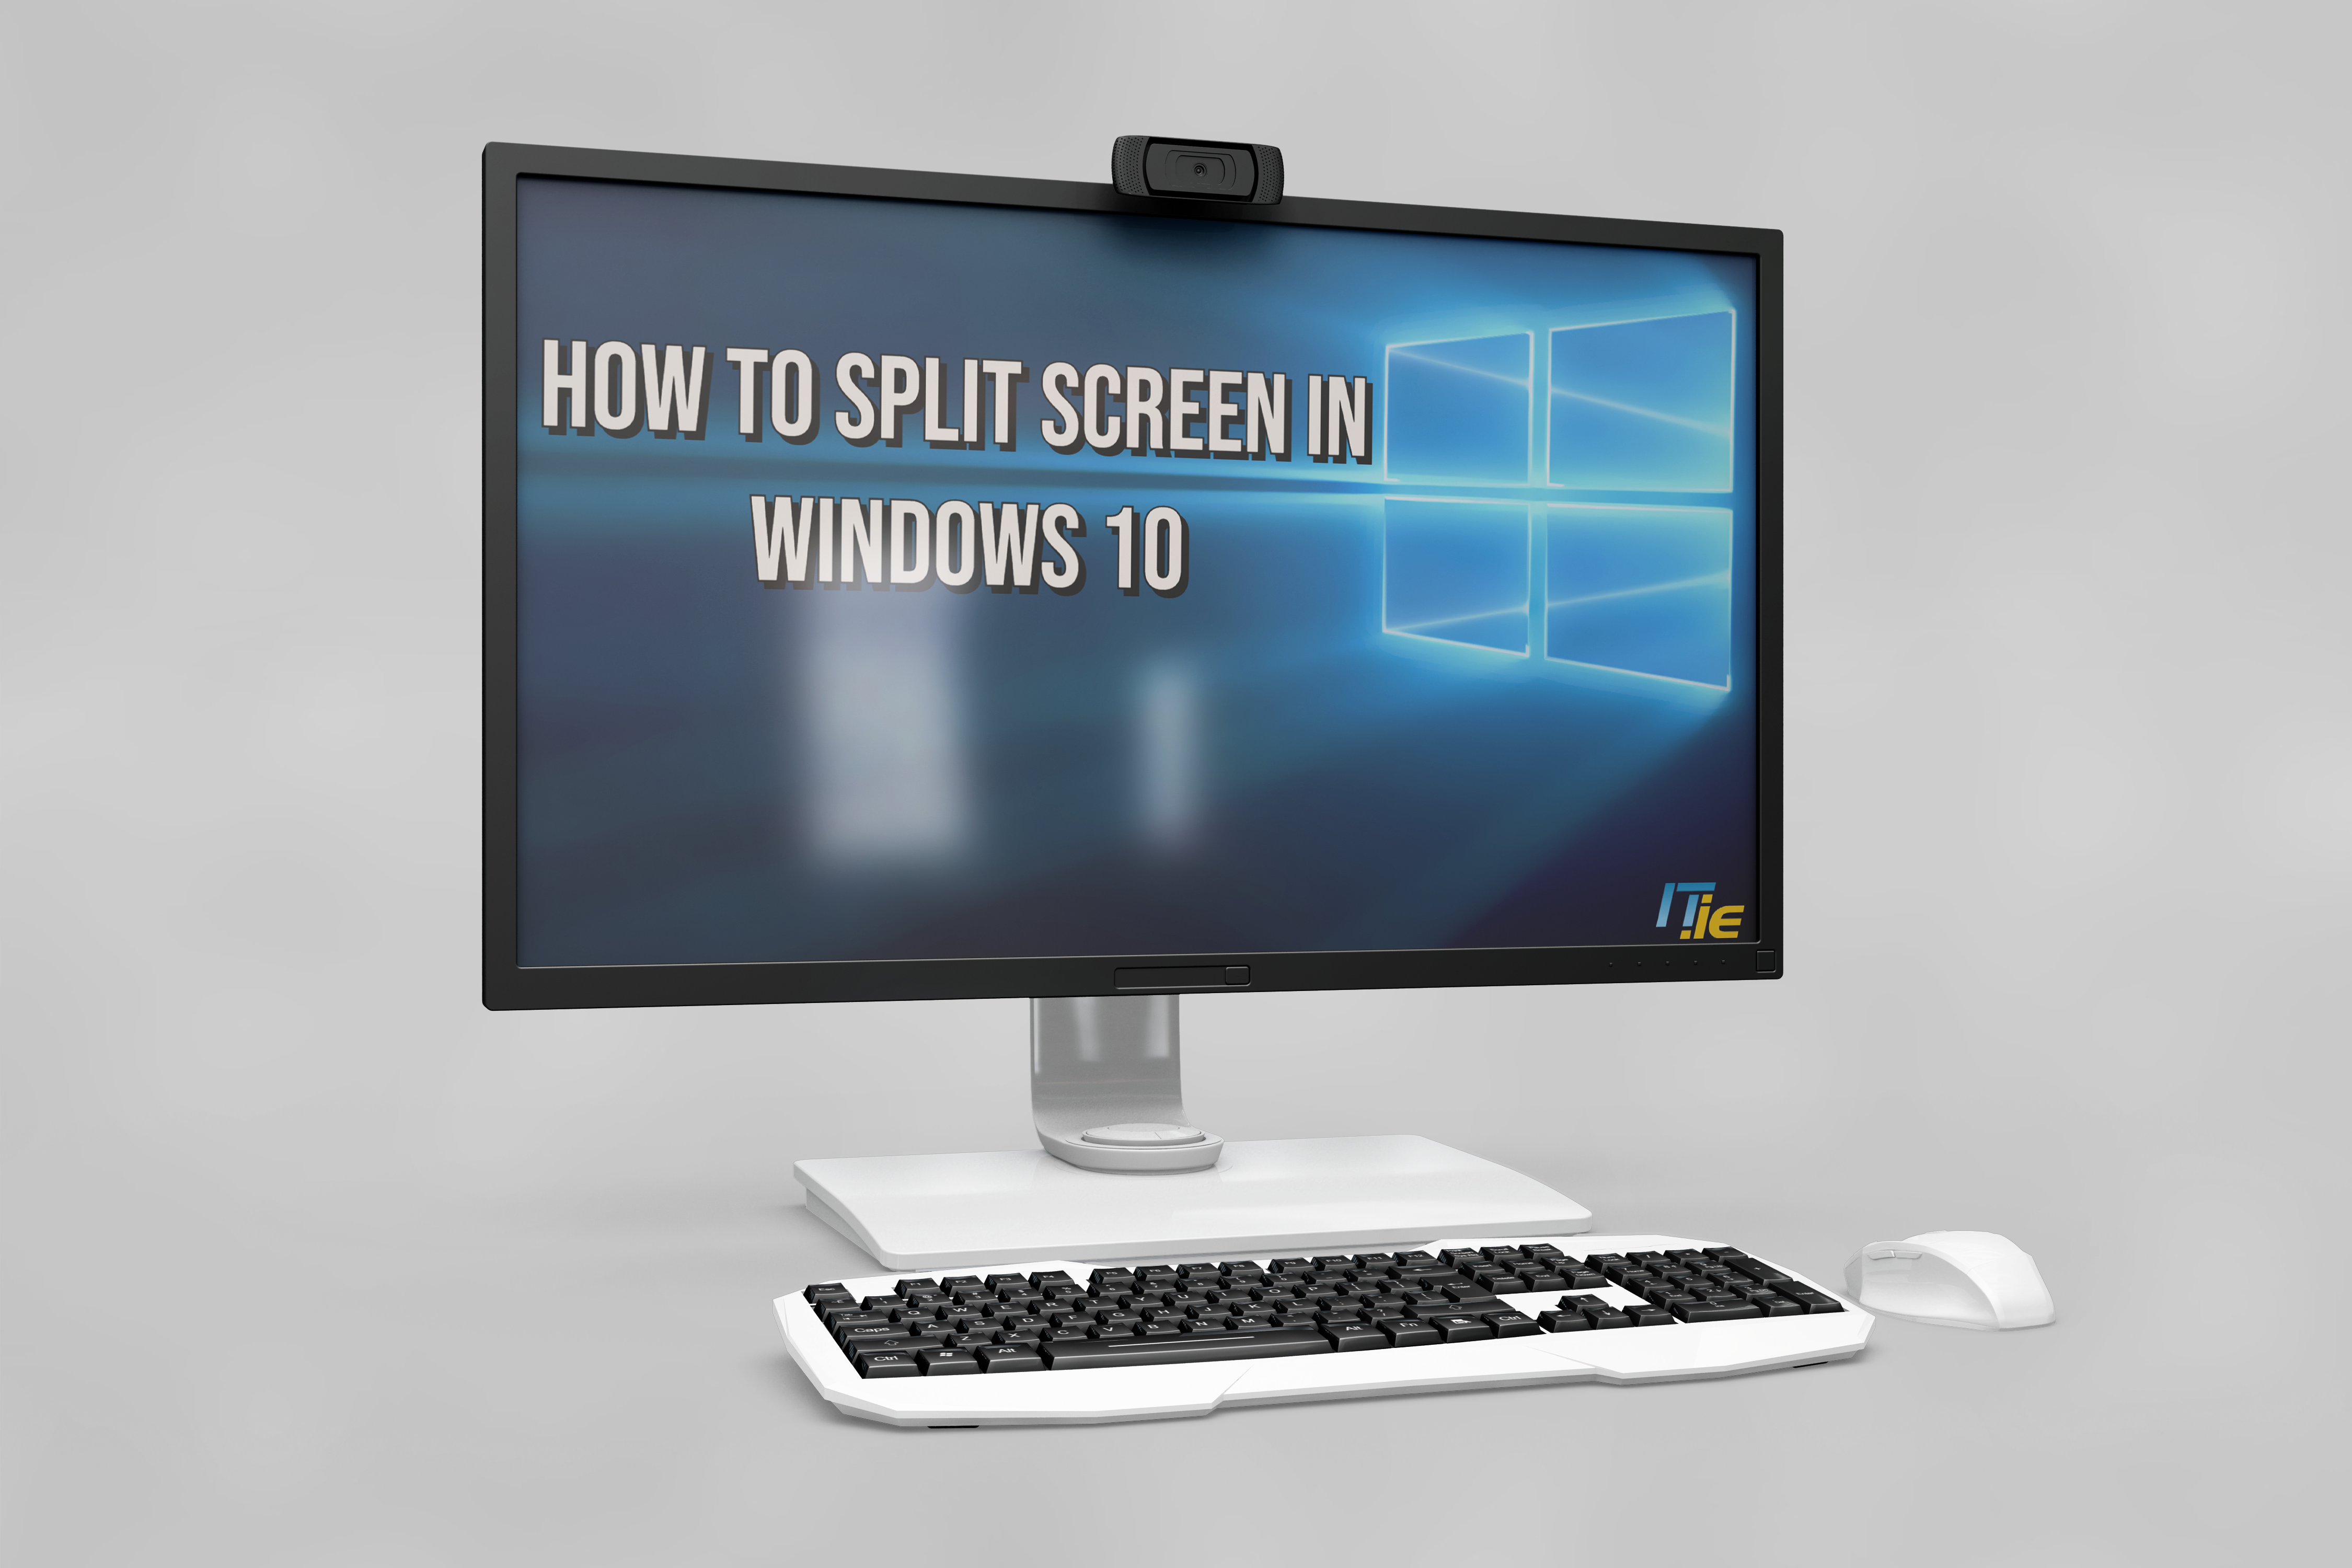 https://it.ie/how-to-split-screen-in-windows-10/